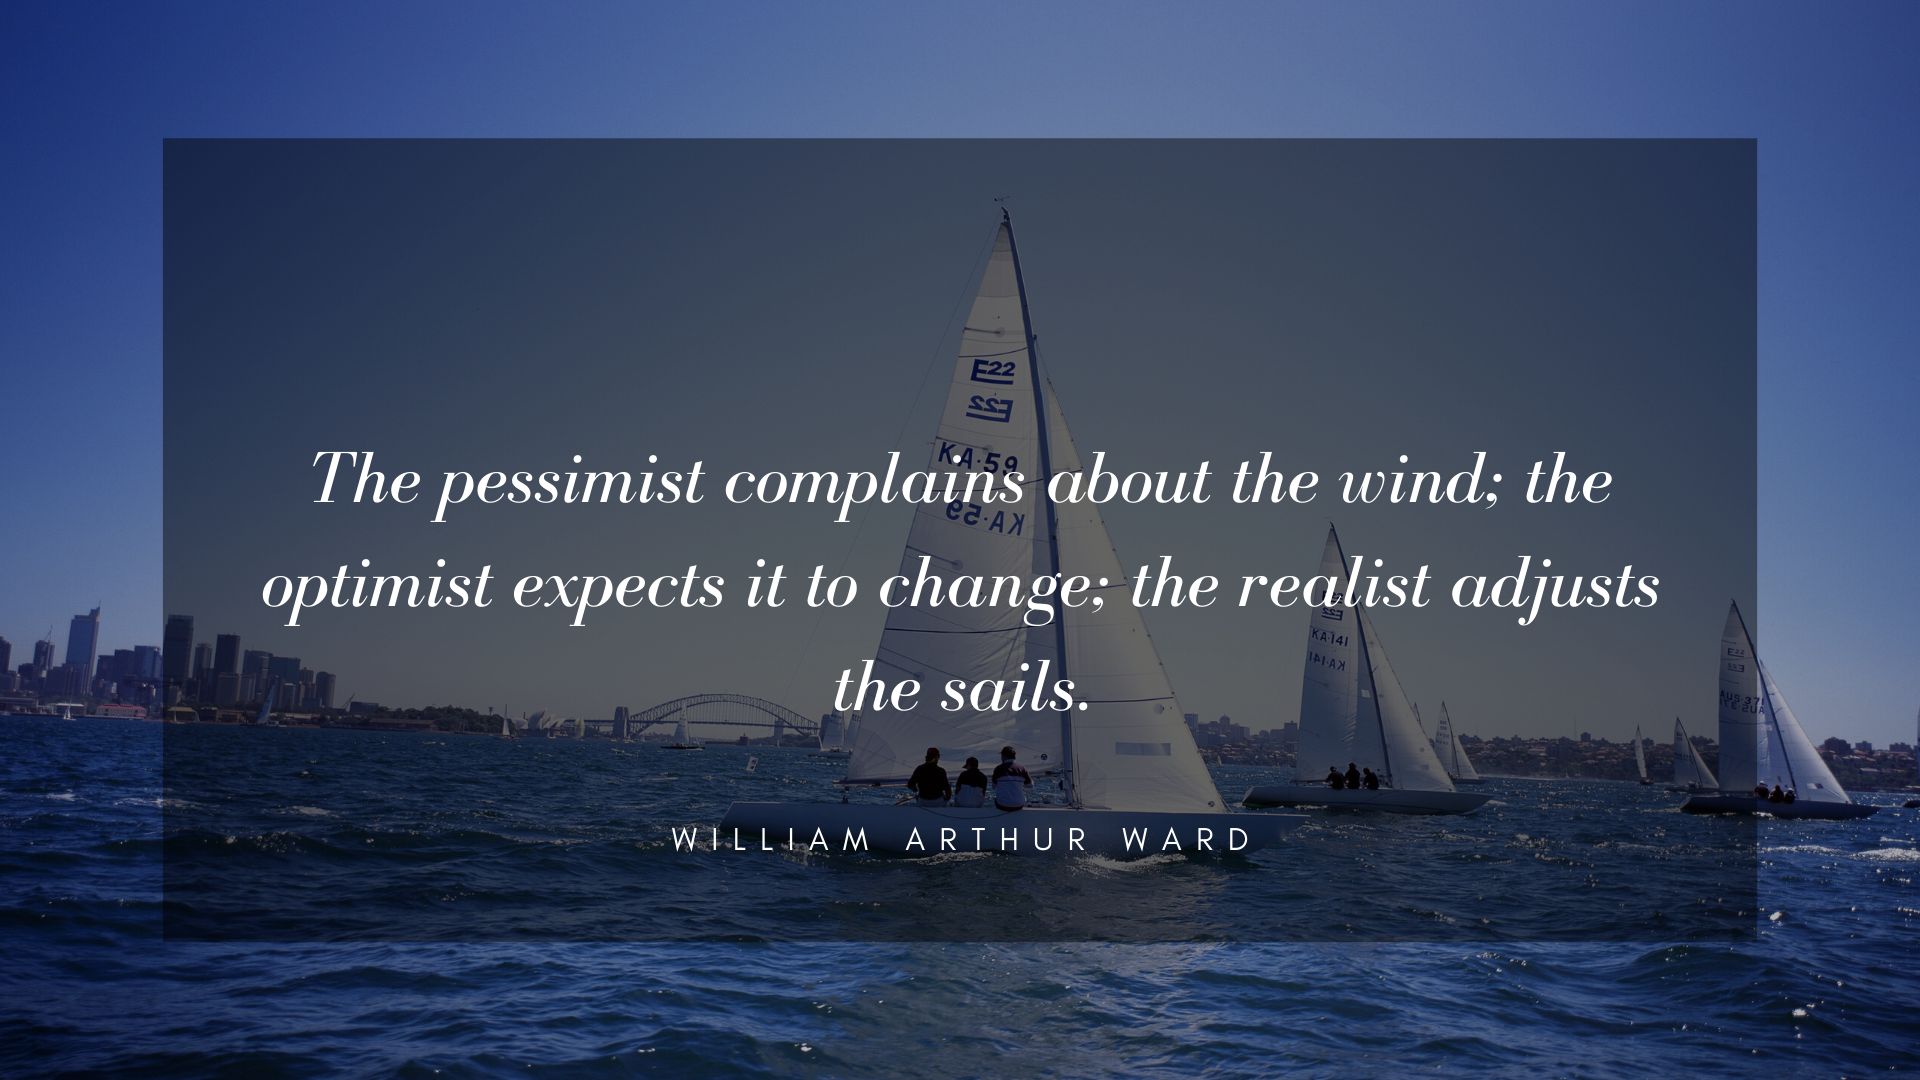 Adjusting our sails